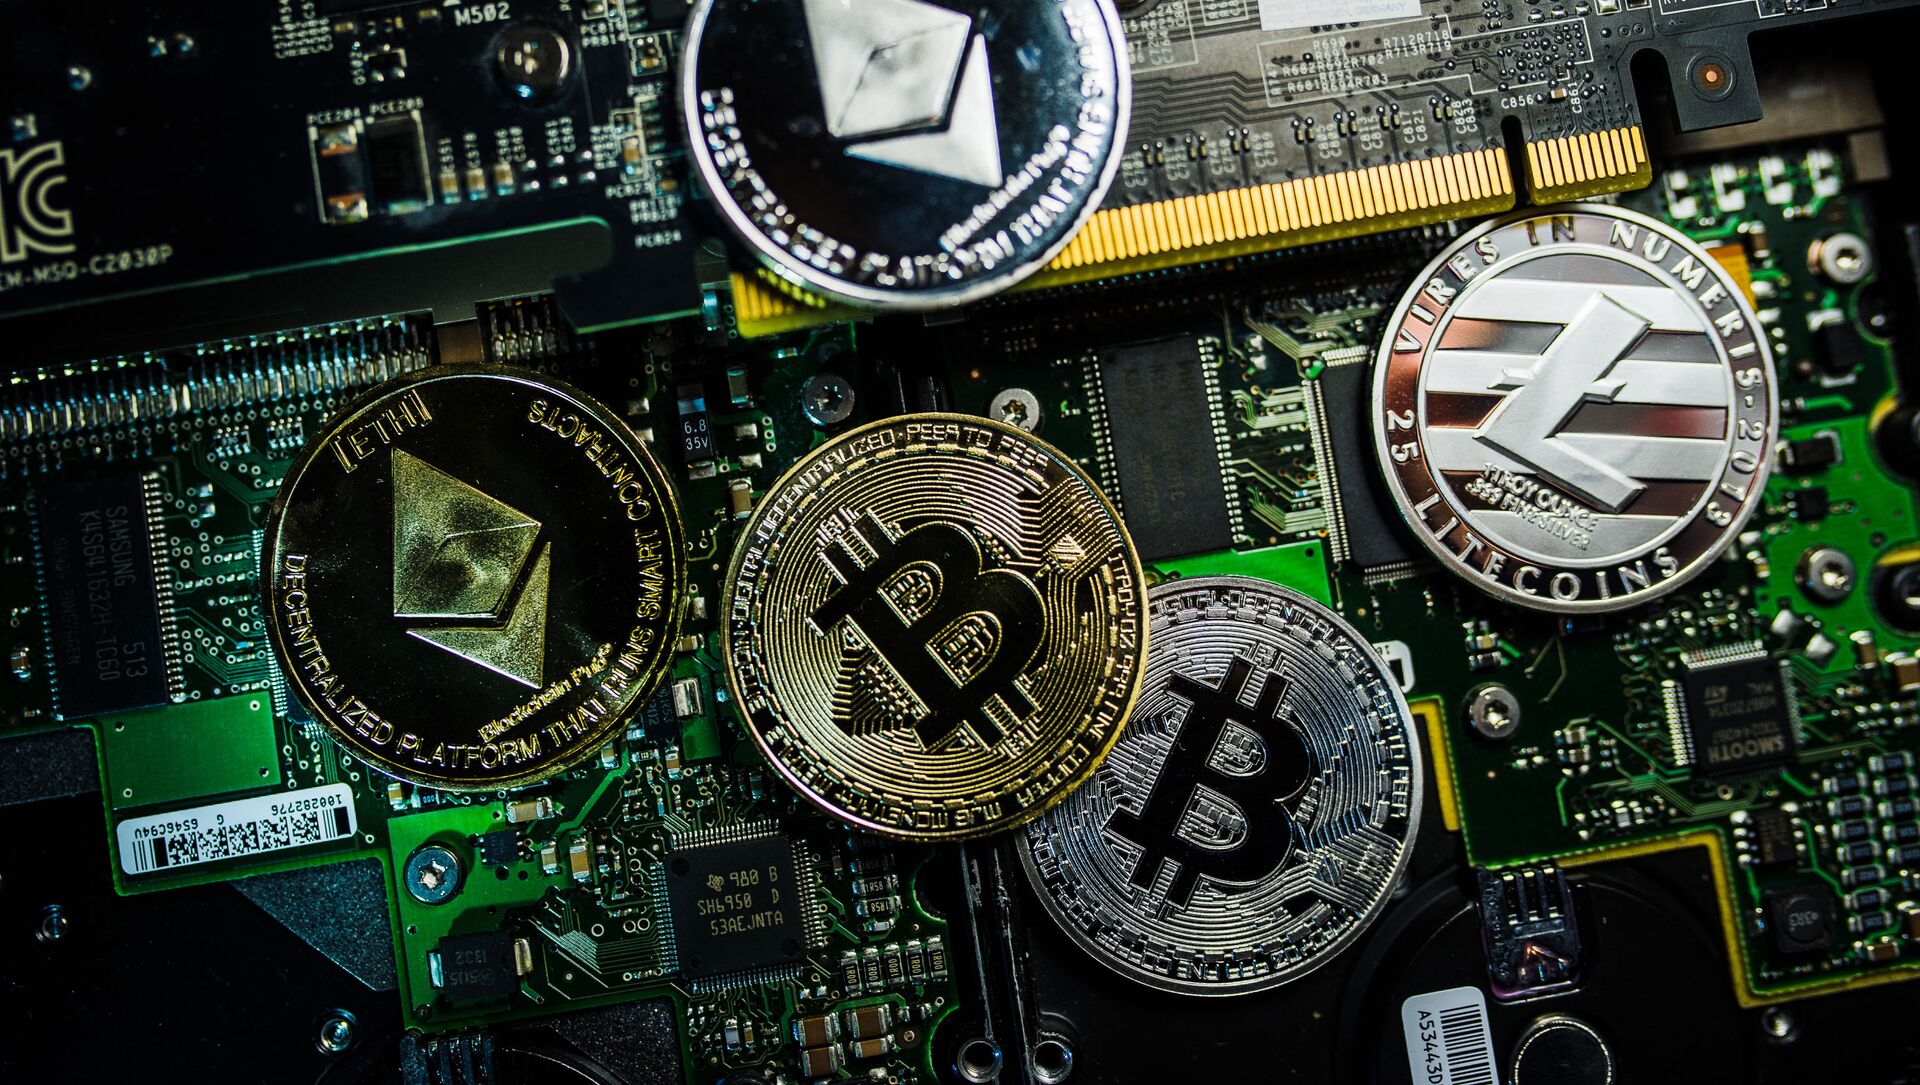 Сувенирные монеты с логотипами криптовалют Bitcoin, Litecoin и Ethereum. - Sputnik Абхазия, 1920, 19.05.2021